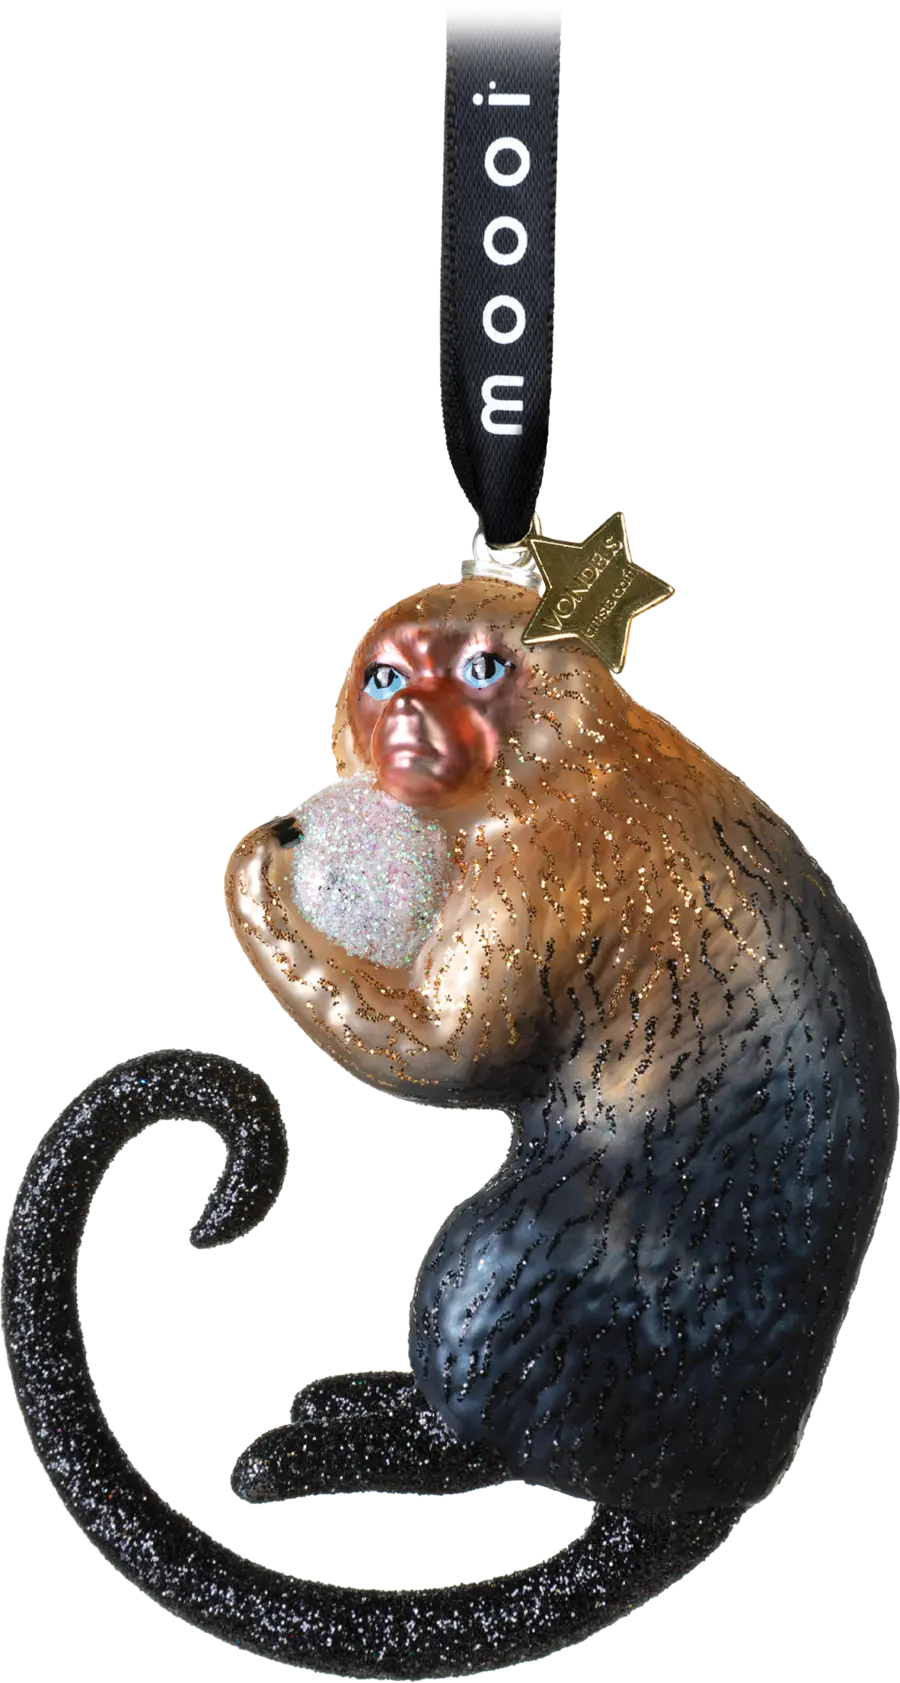 Extinct Animals Ornaments Indigo Macaque